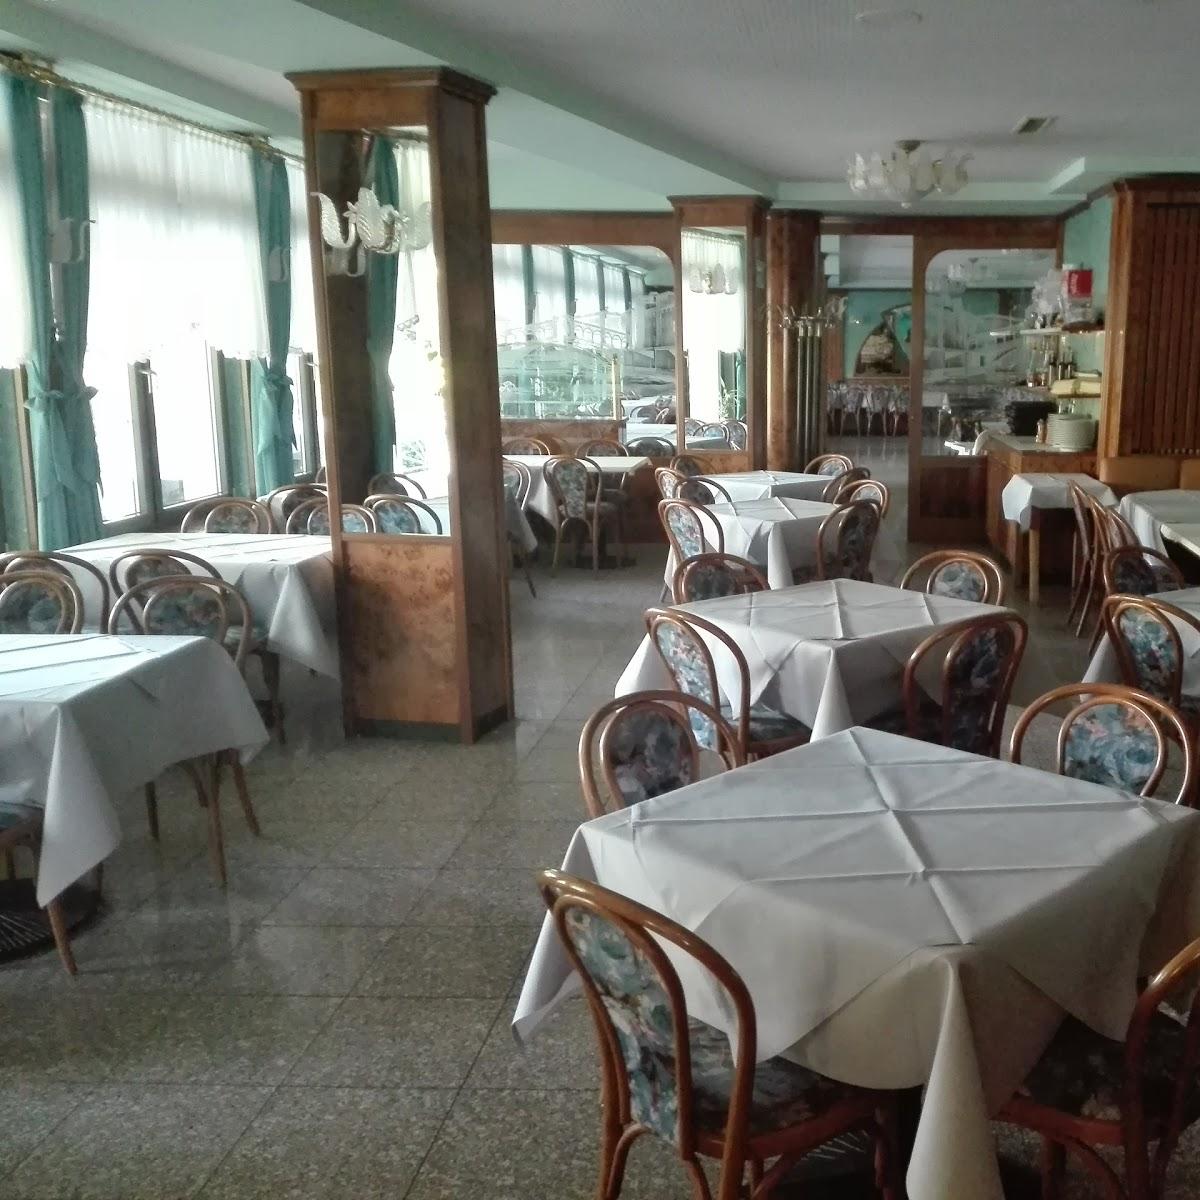 Restaurant "Ristorante La Gondola" in Trier